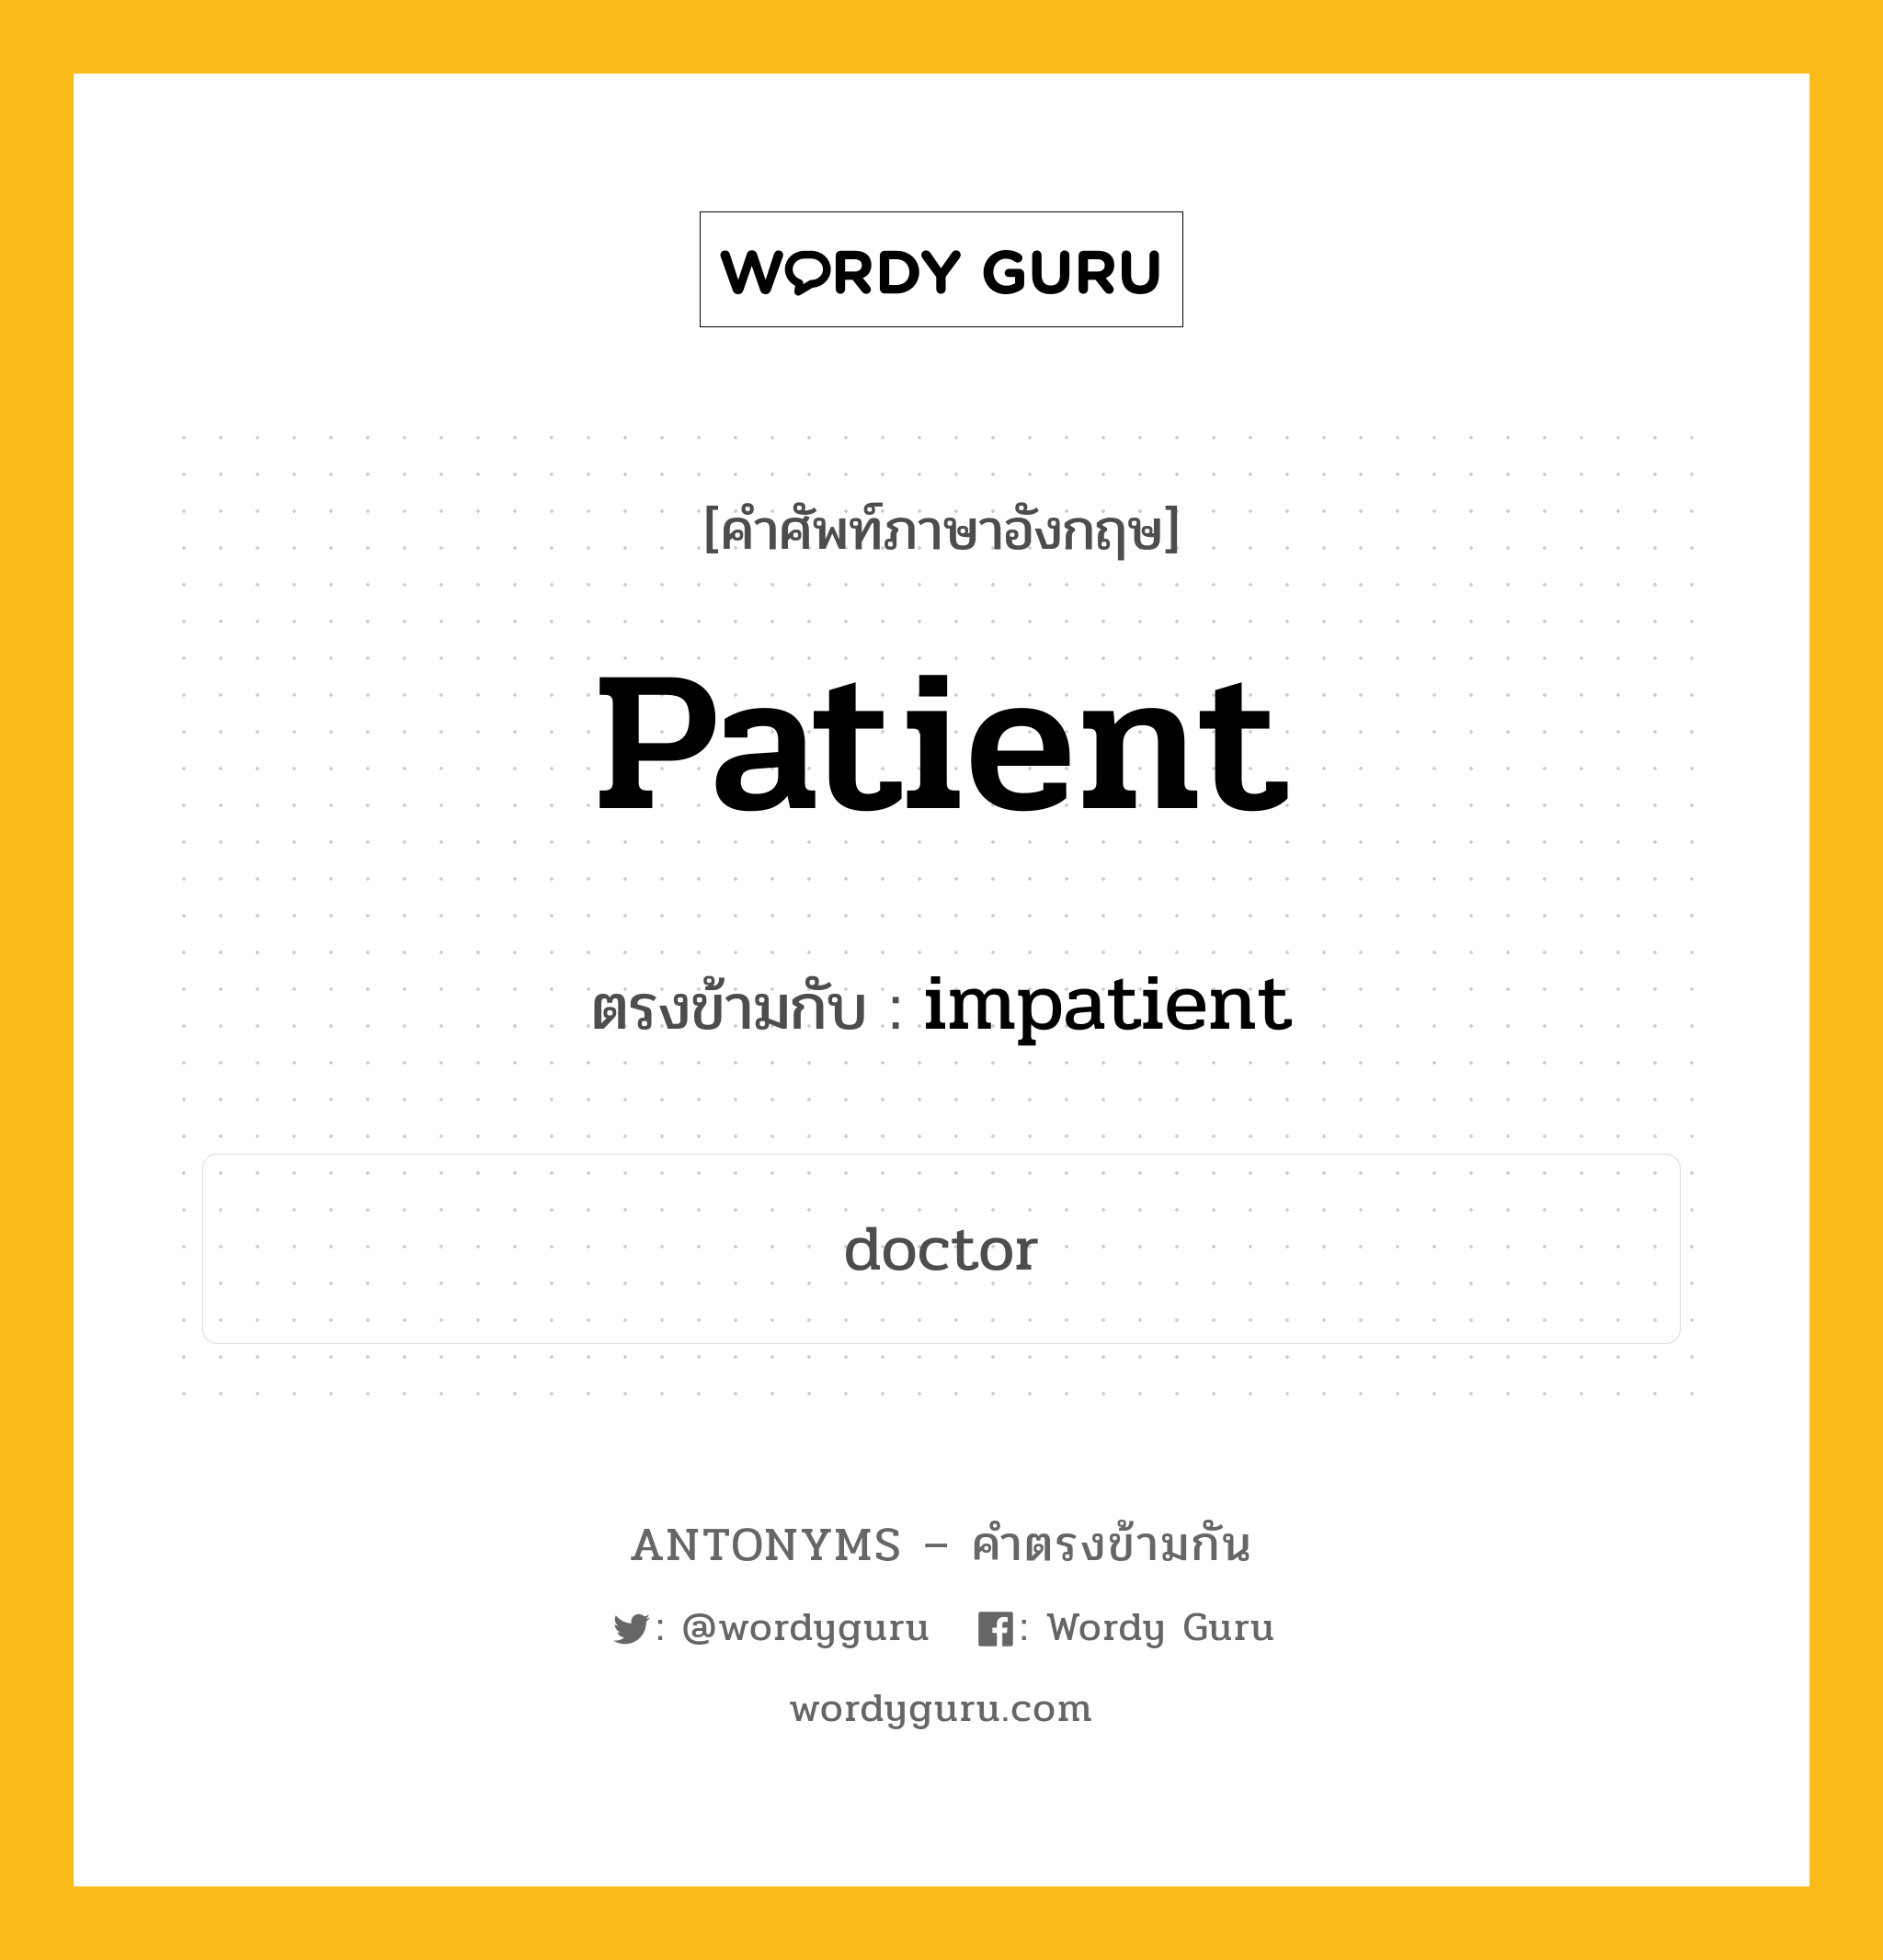 patient เป็นคำตรงข้ามกับคำไหนบ้าง?, คำศัพท์ภาษาอังกฤษ patient ตรงข้ามกับ impatient หมวด impatient